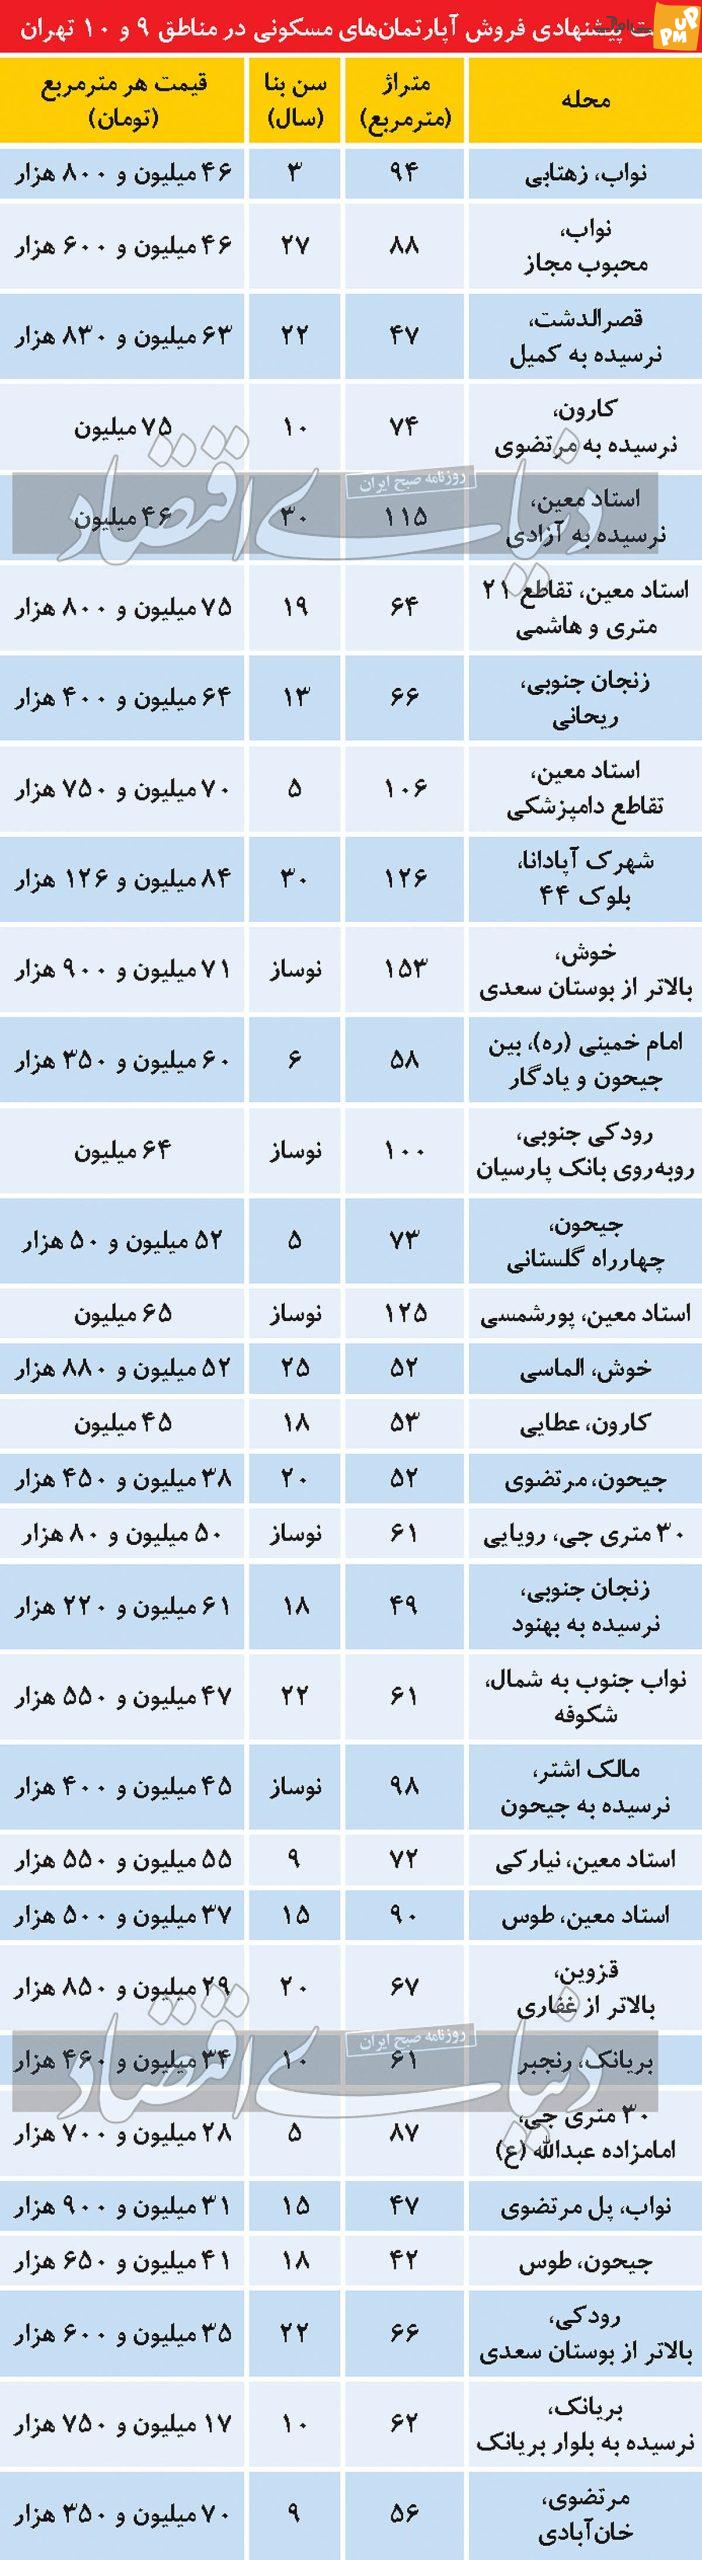 قیمت مسکن در مناطق 9 و 10 تهران / جدول قیمت